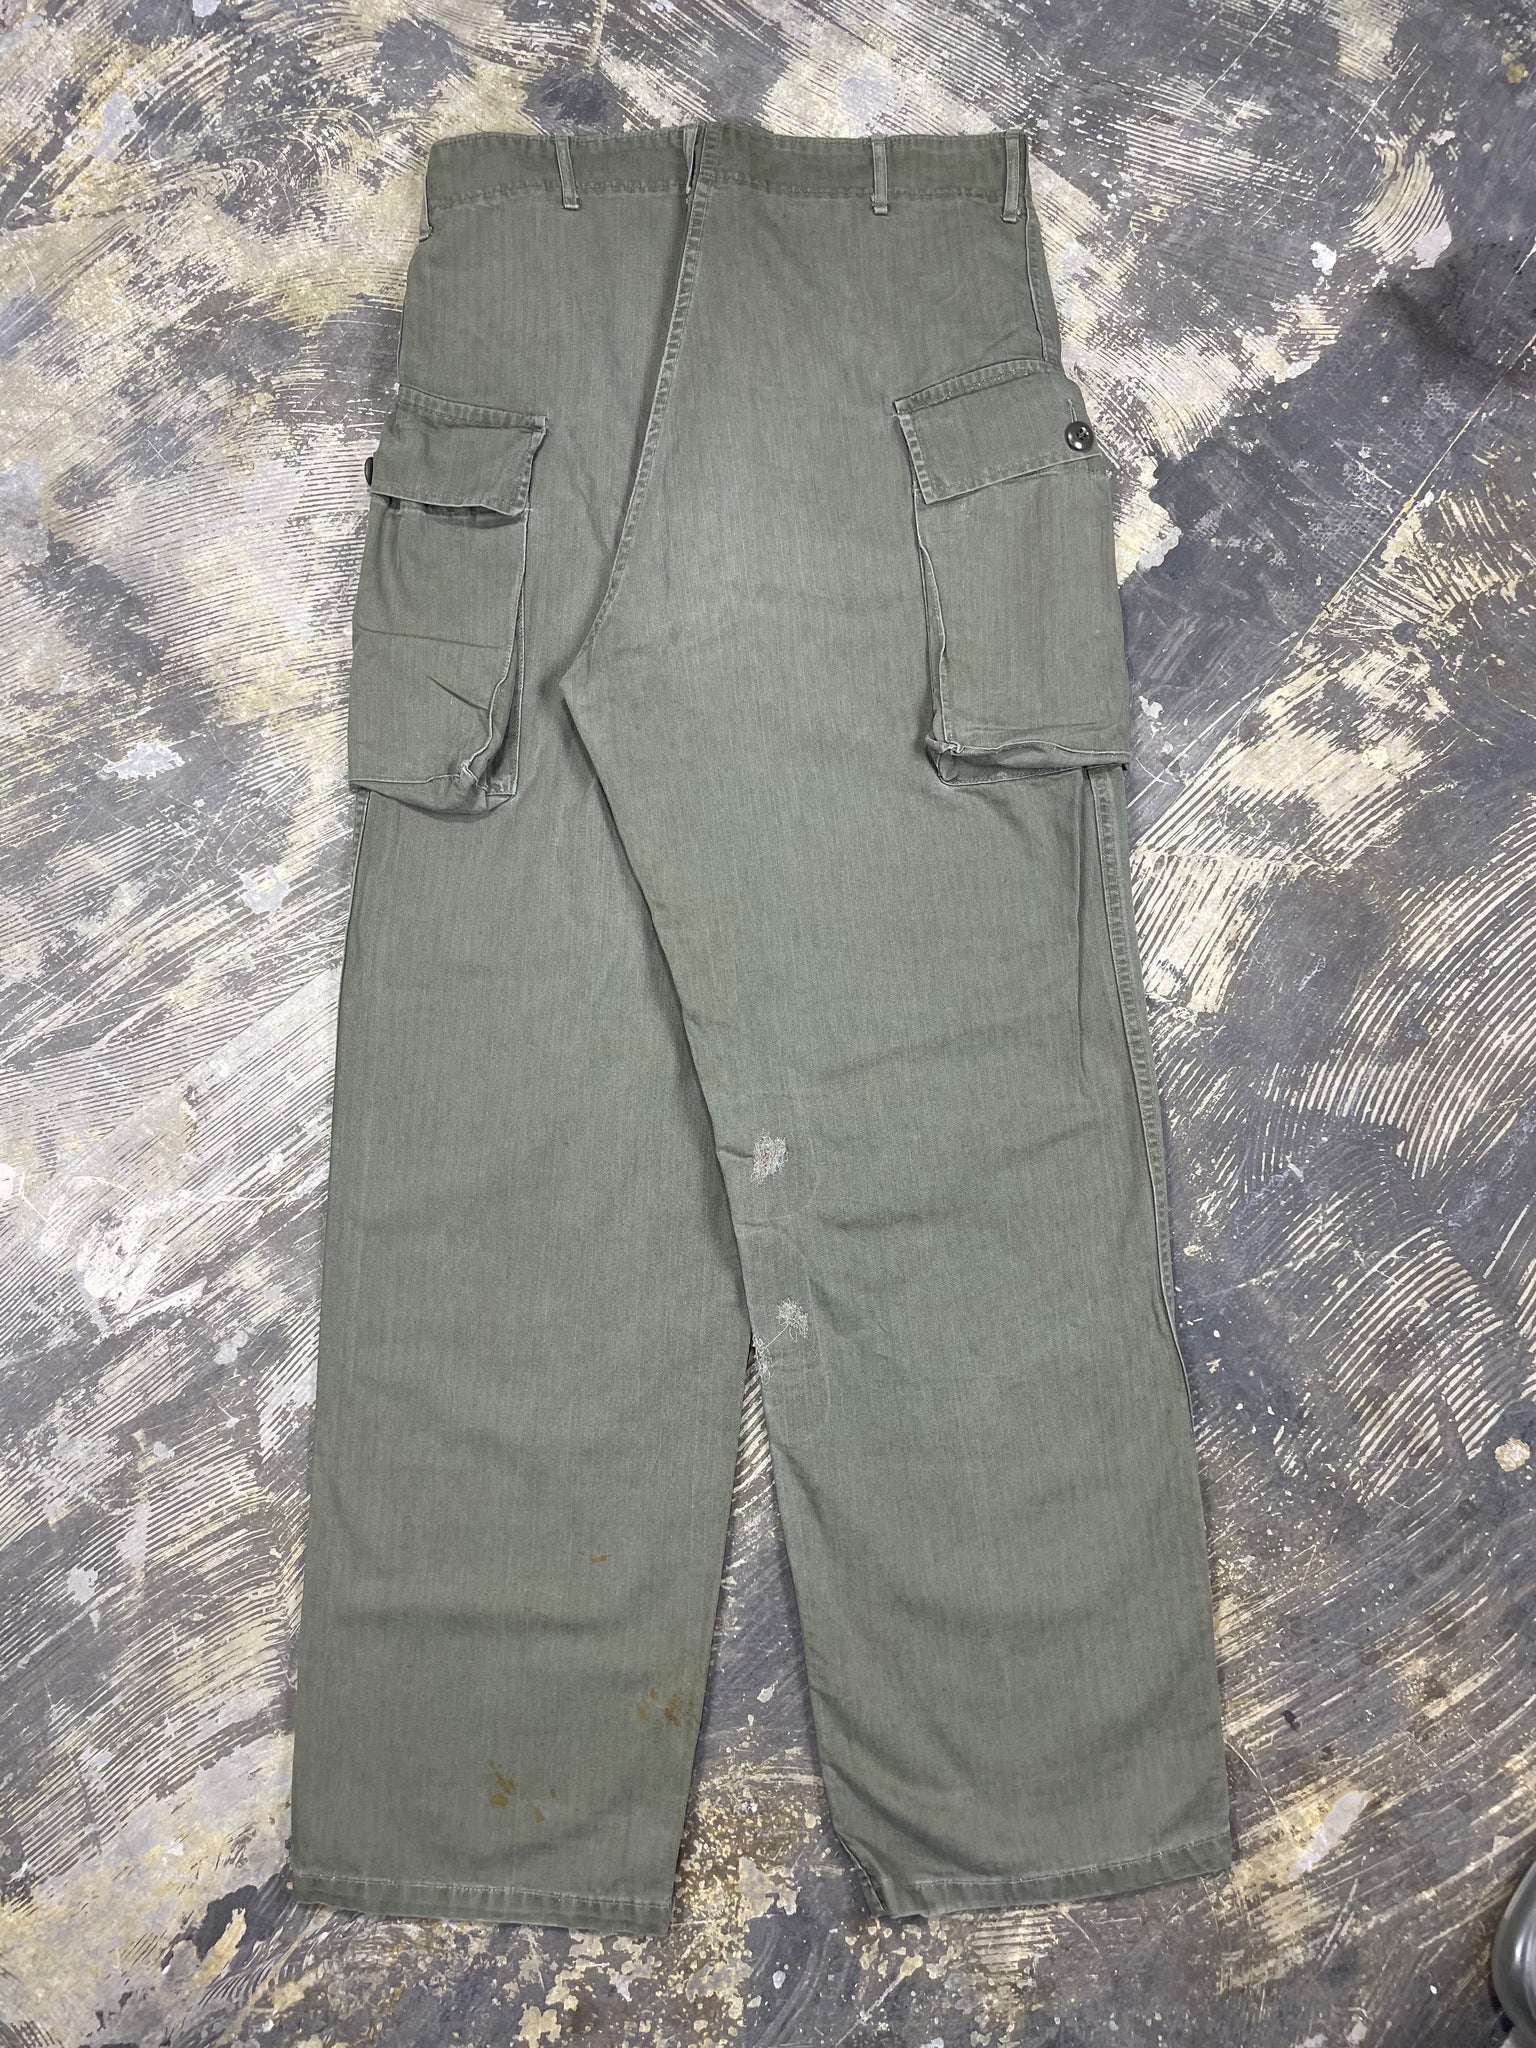 WW2 US Army HBT Combat Trousers (JYJ-0242)